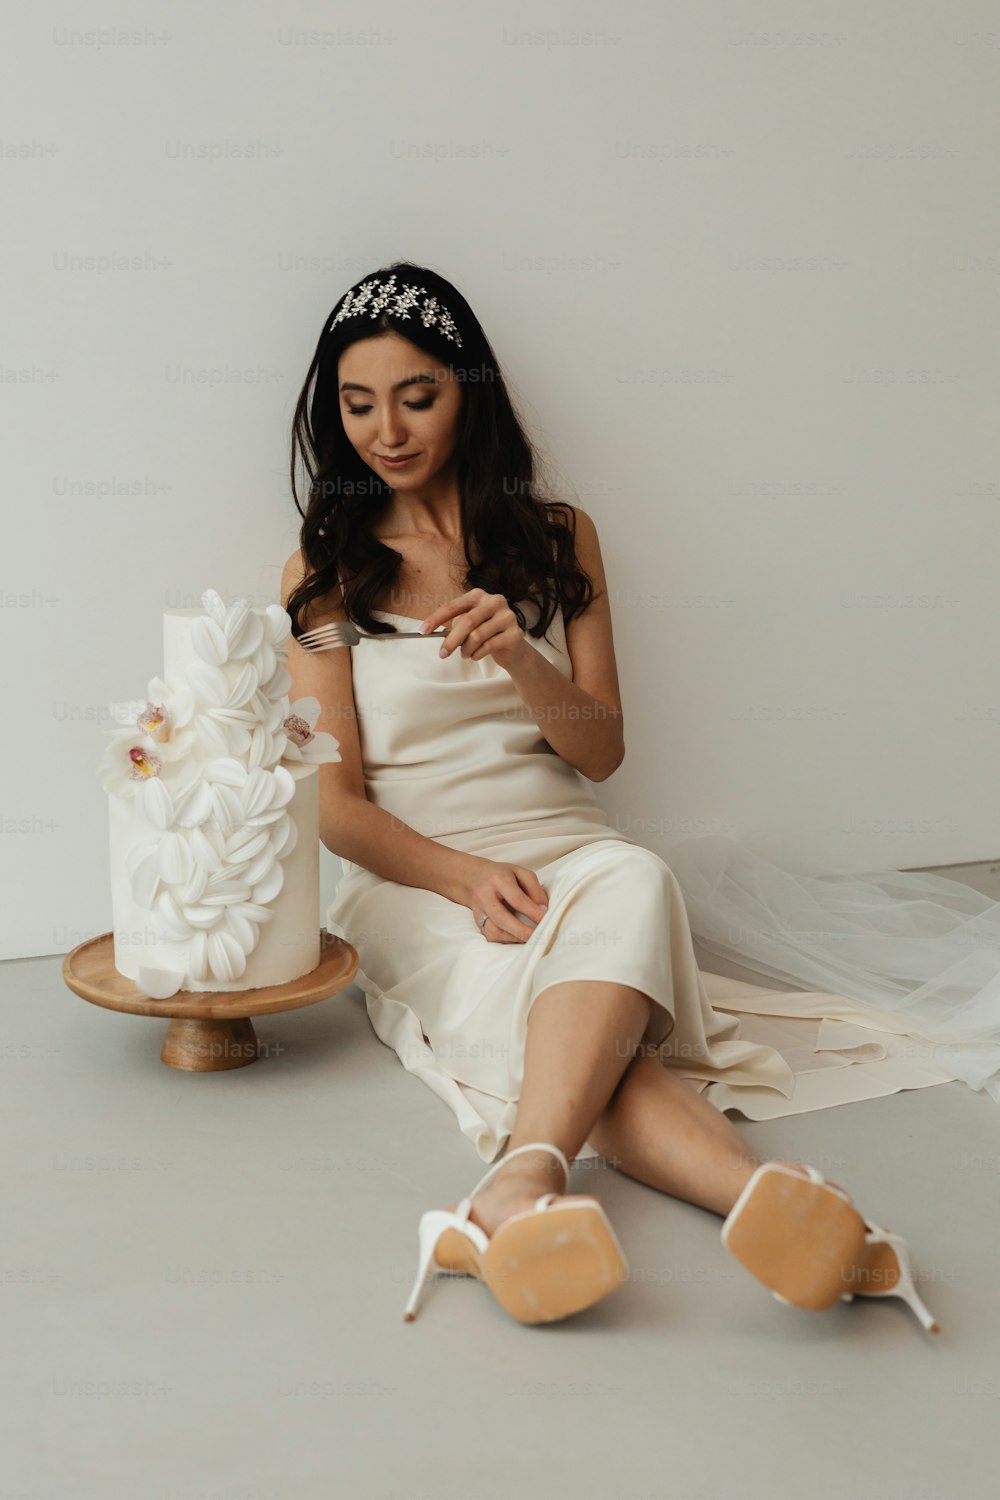 uma mulher em um vestido branco sentado ao lado de um bolo